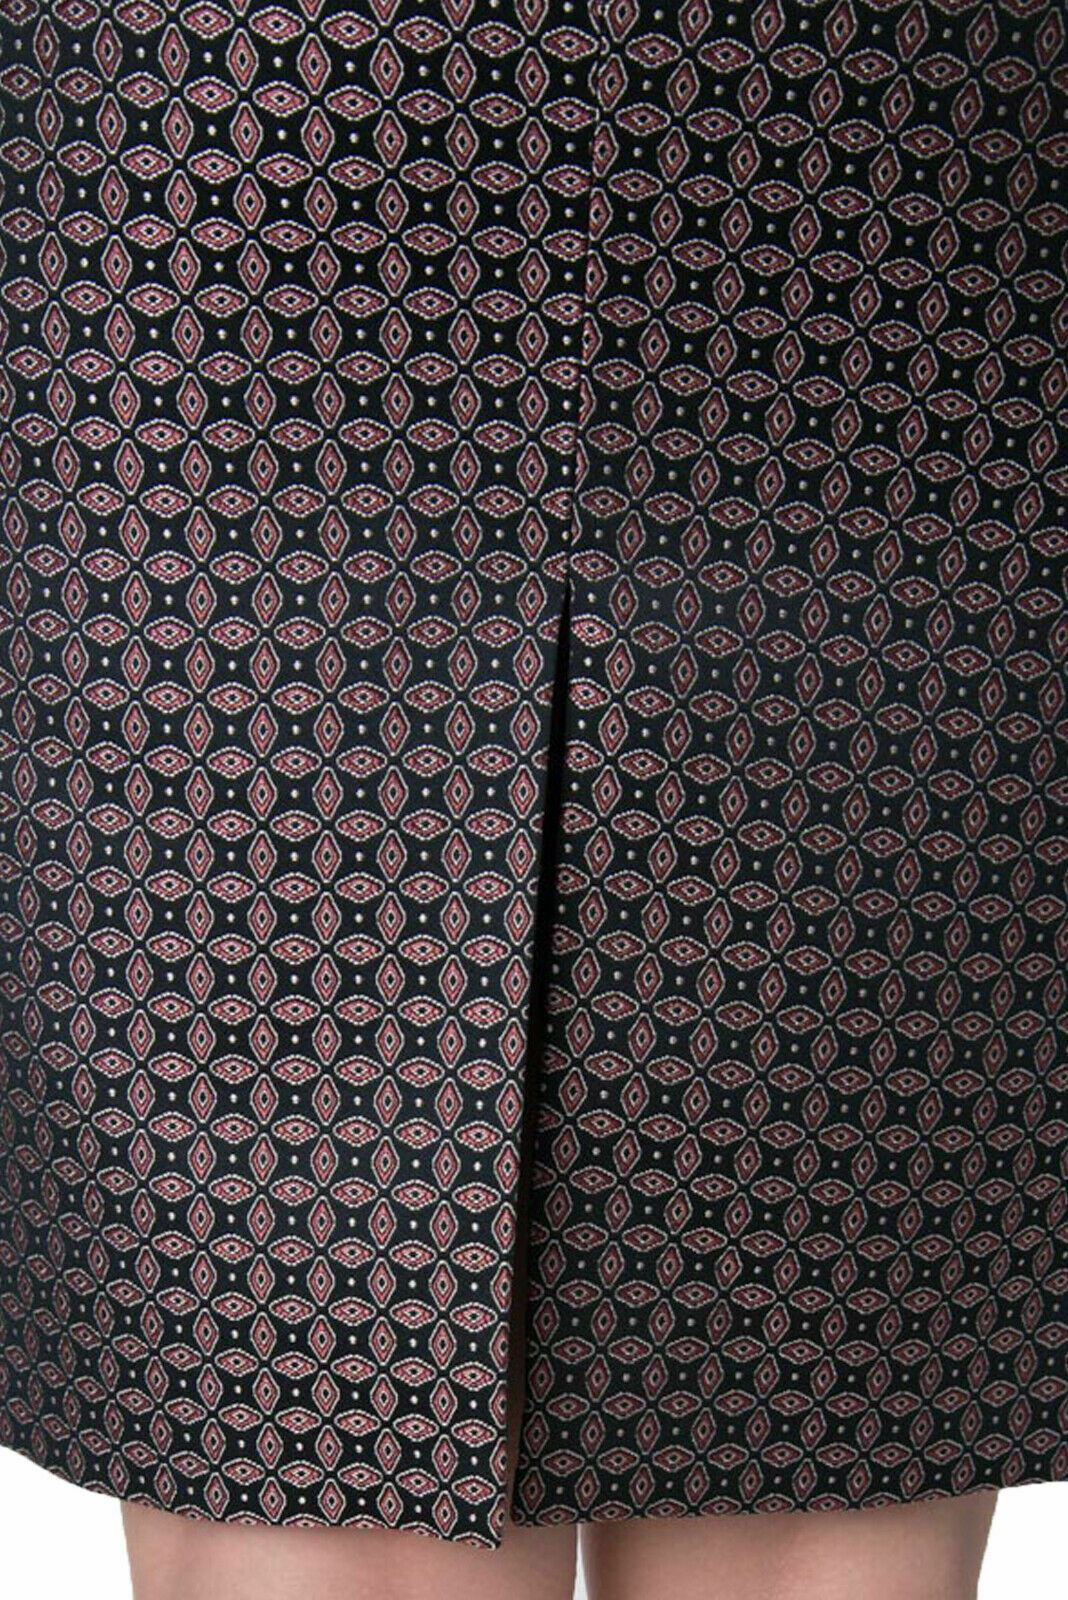 JOSEPH Cravat Jacquard Black Burgundy Pencil Skirt UK 10 US 6 EU 38 BNWT Timeless Fashions